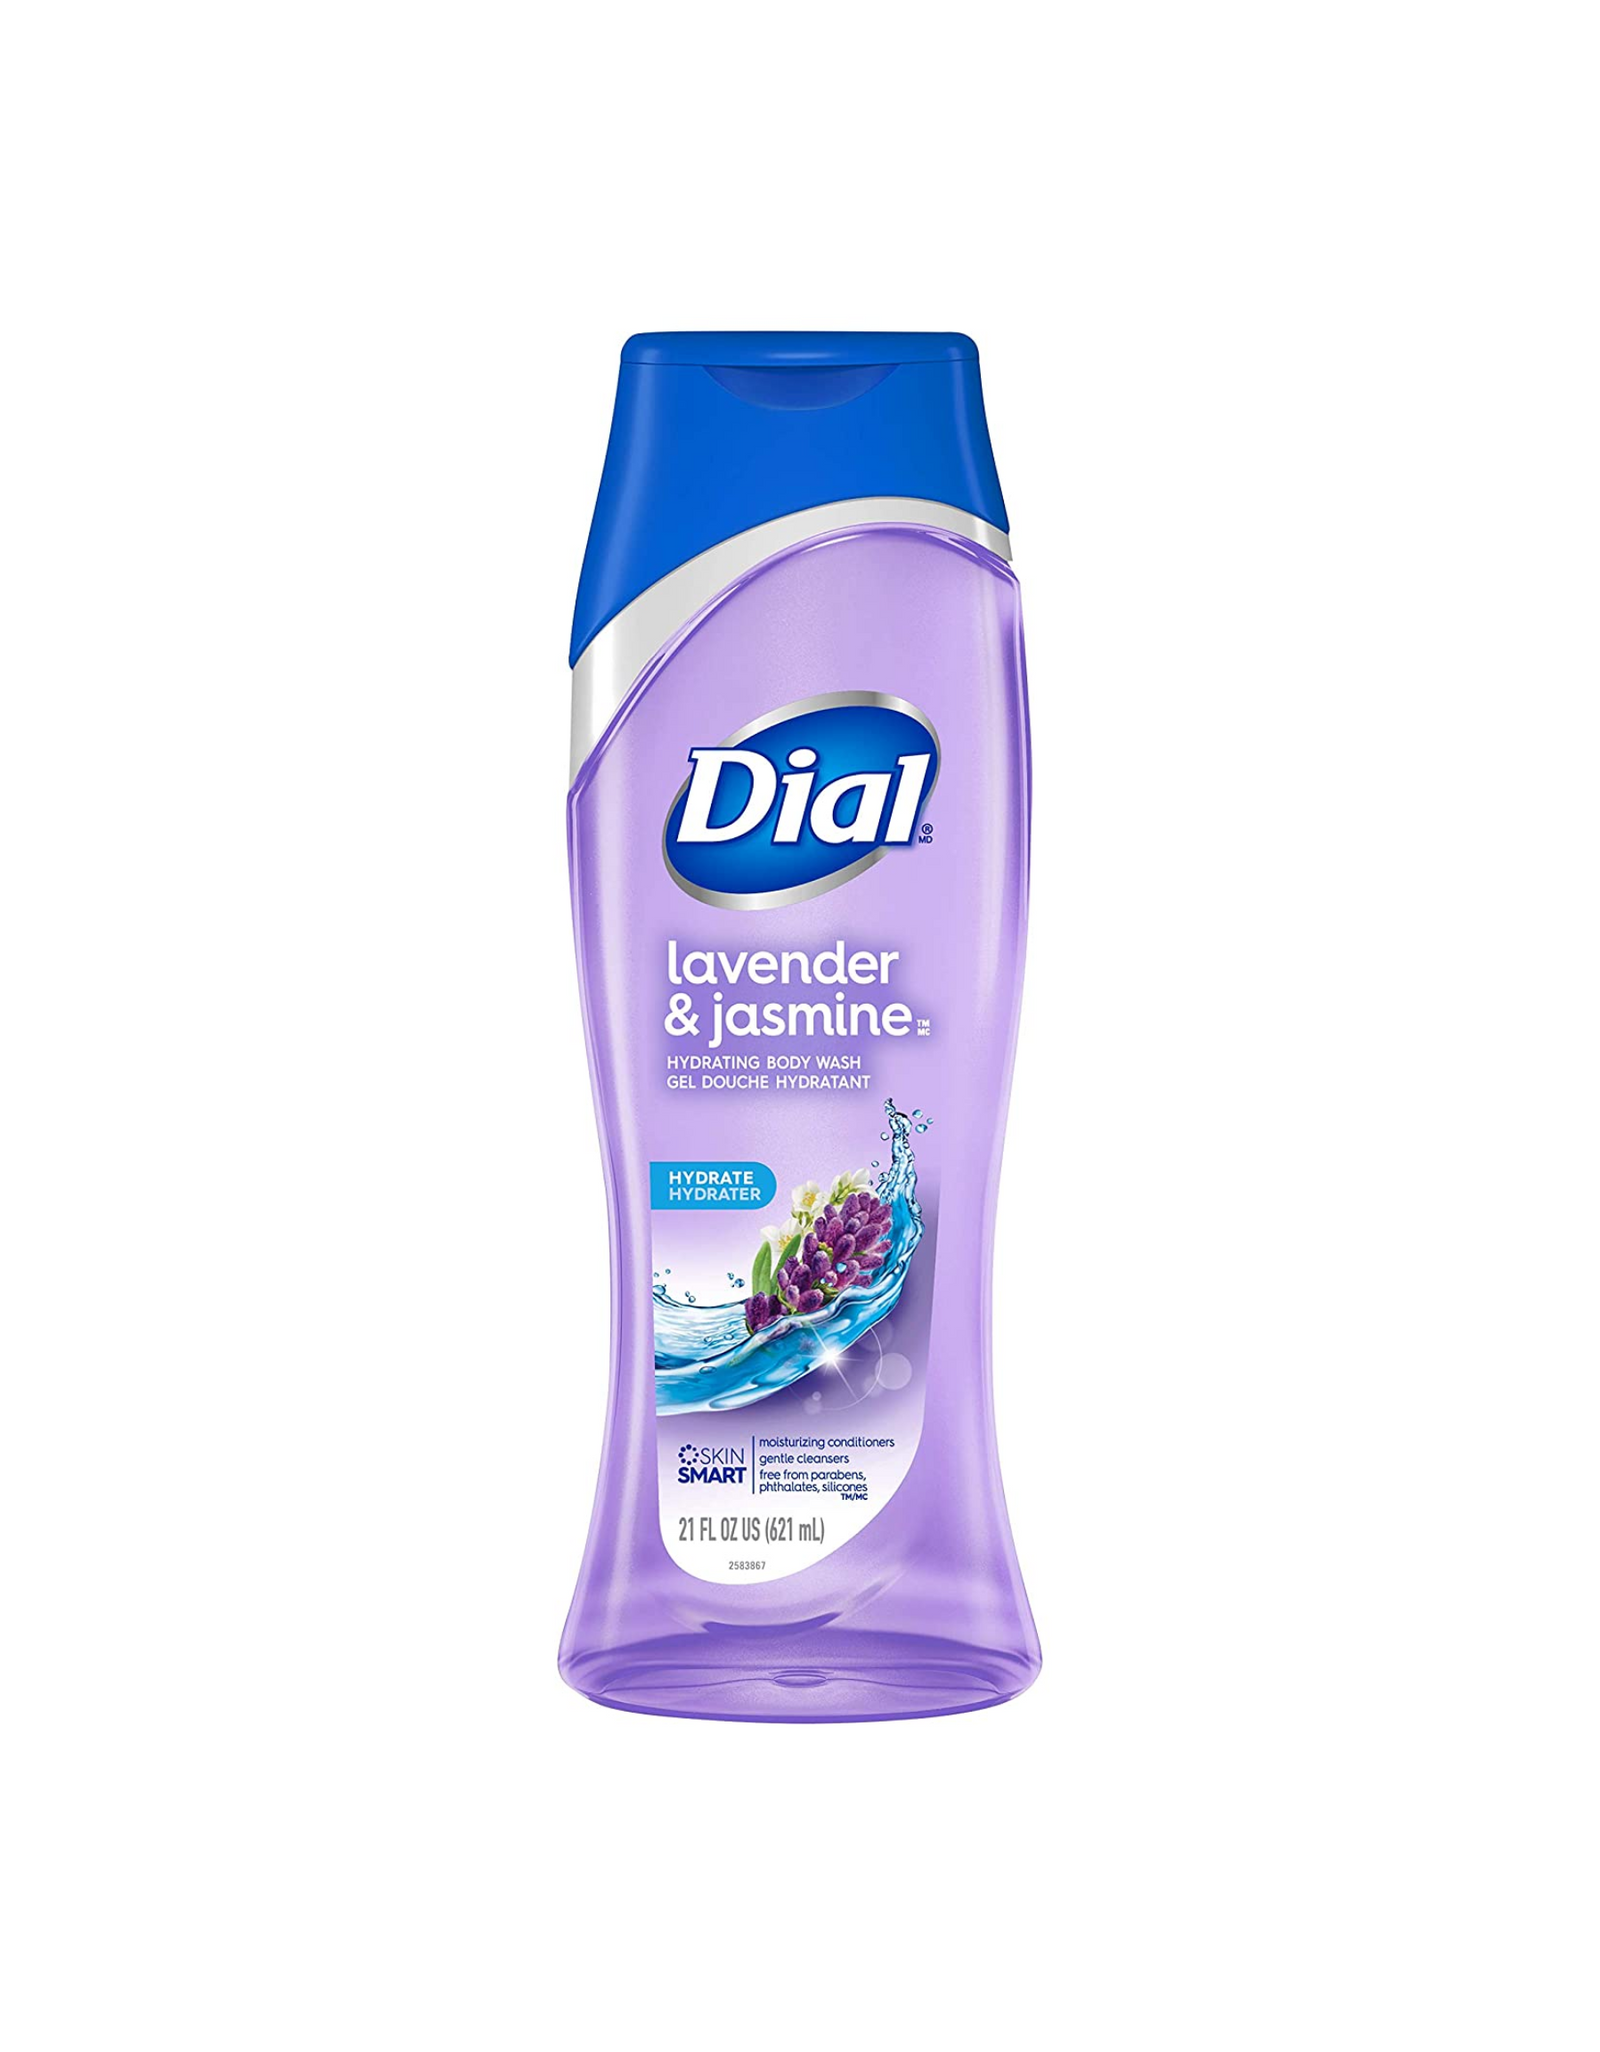 Dial Body Wash, Lavender & Jasmine, Hydrating Body Wash Gel Douch Hydrant, 21 fl oz (Pack of 3)